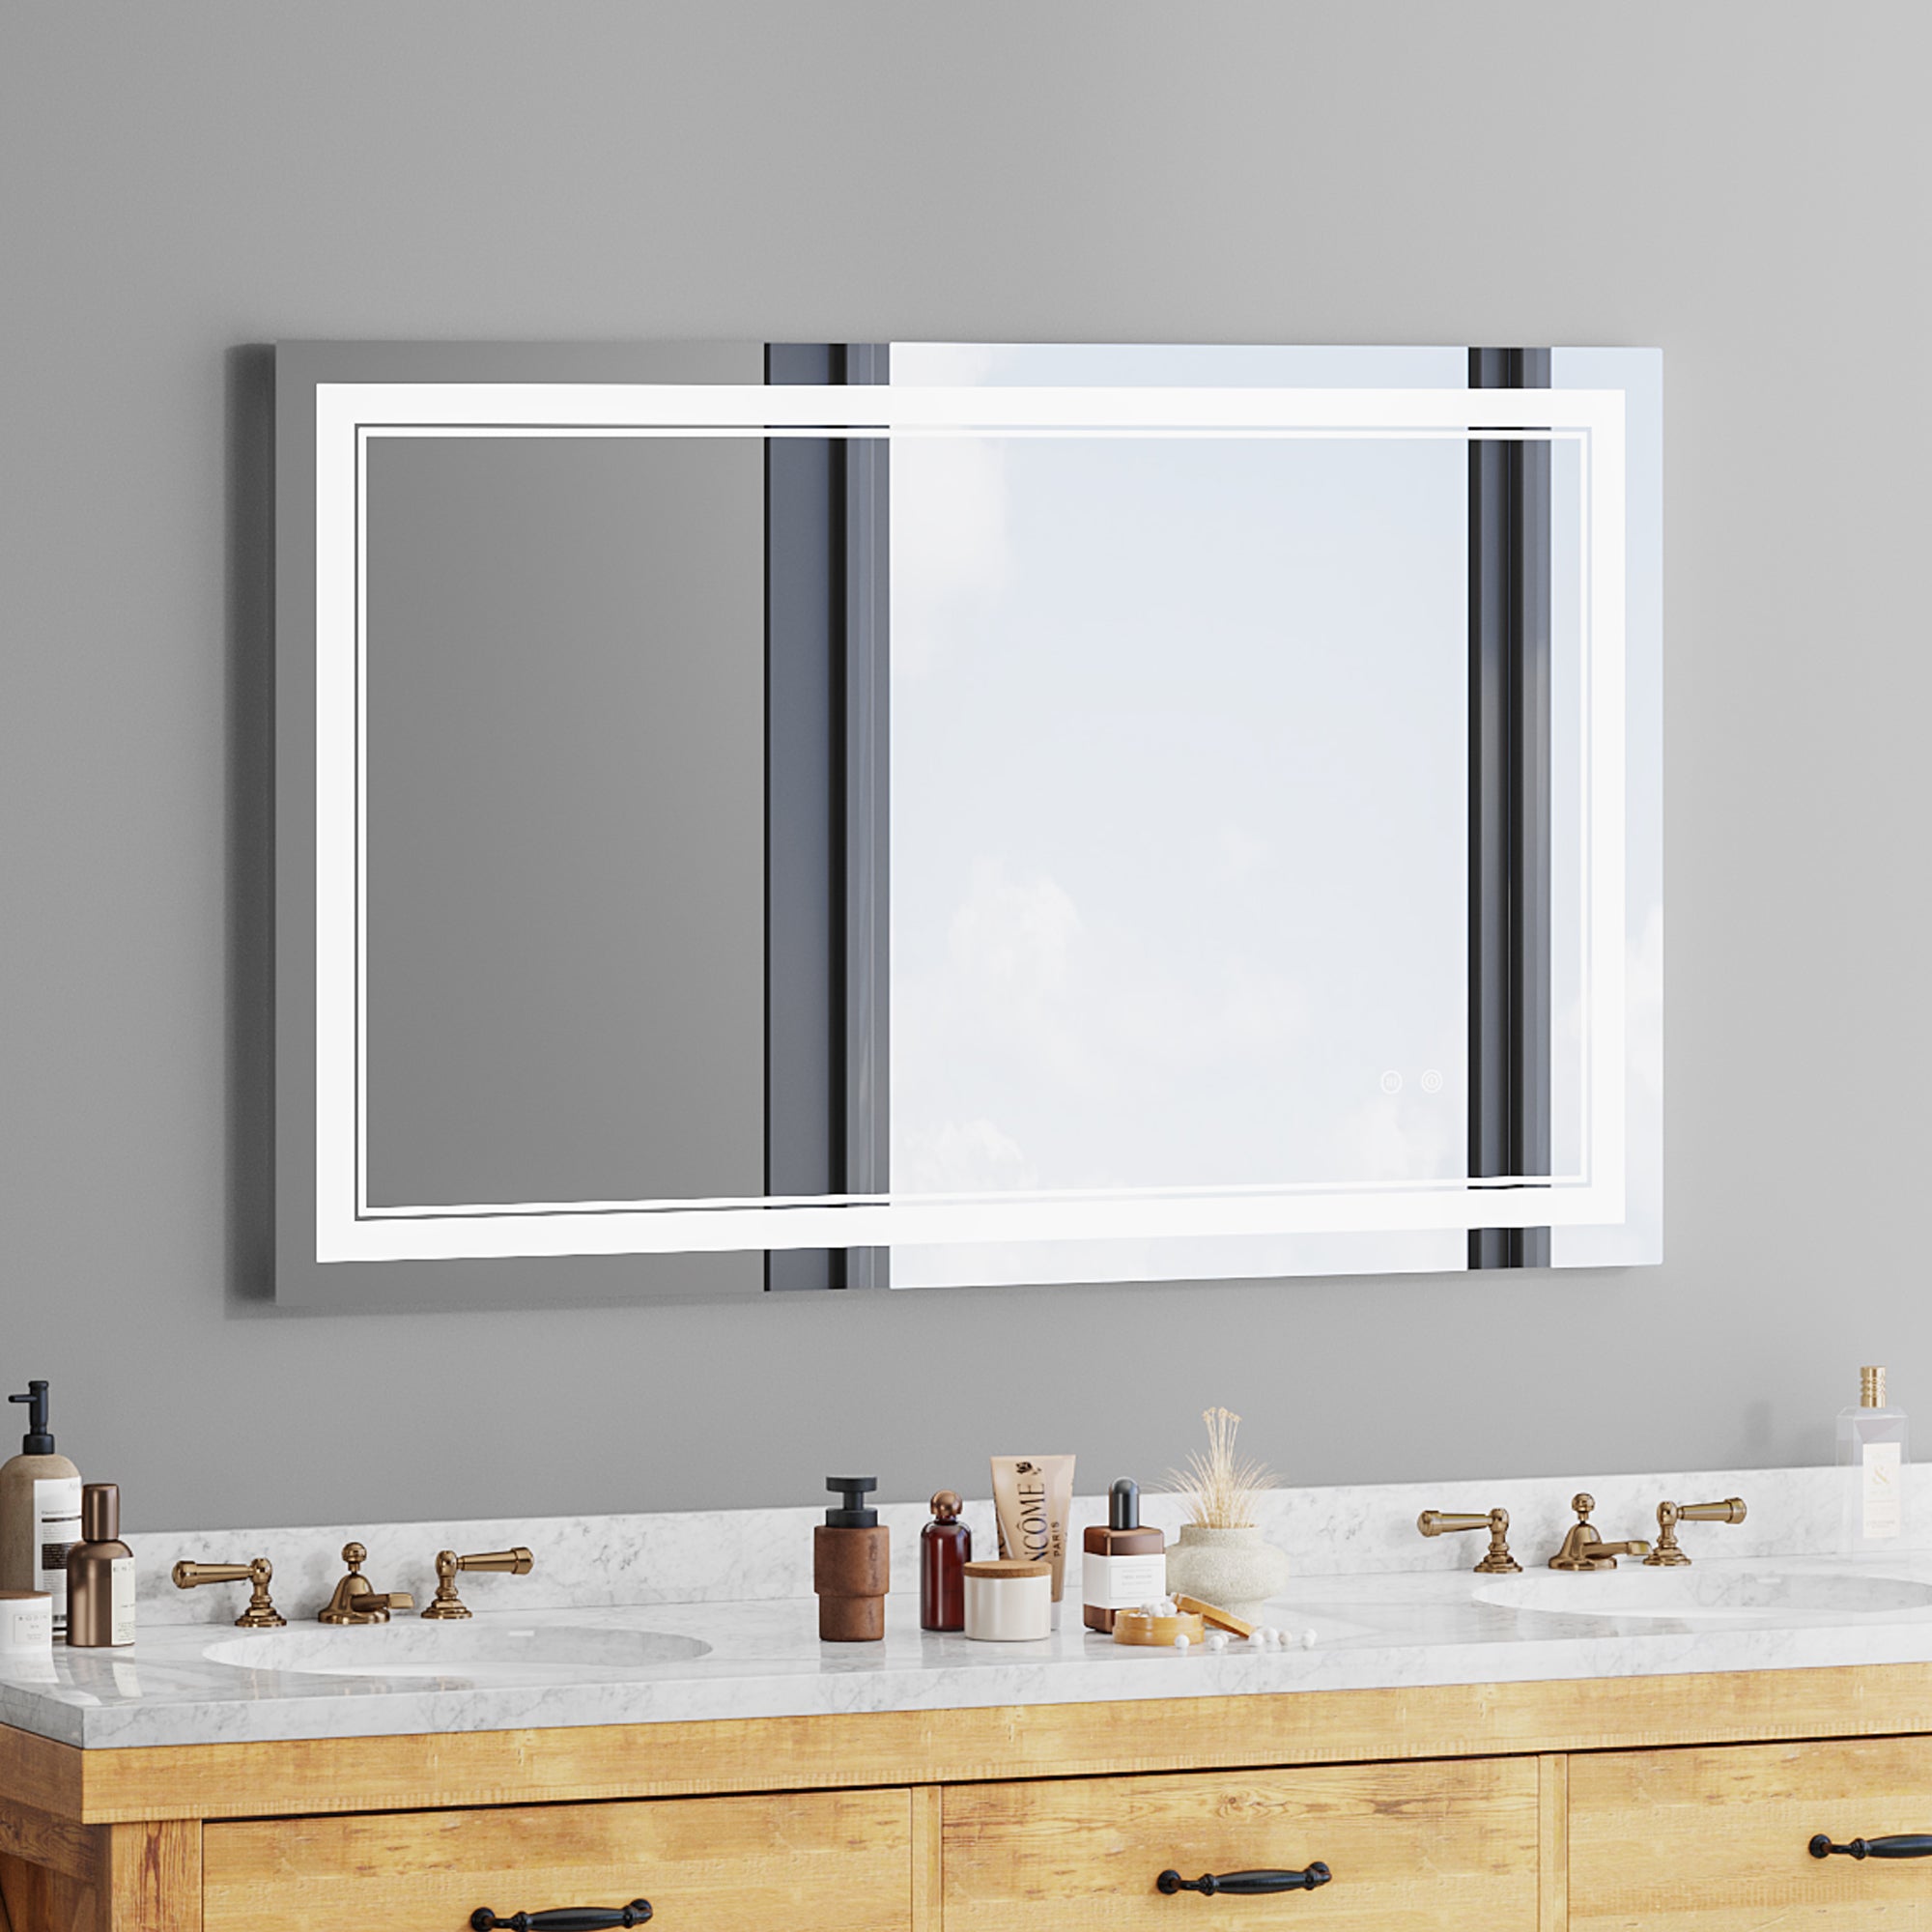 LED Bathroom Mirror RX-LM02-4830F